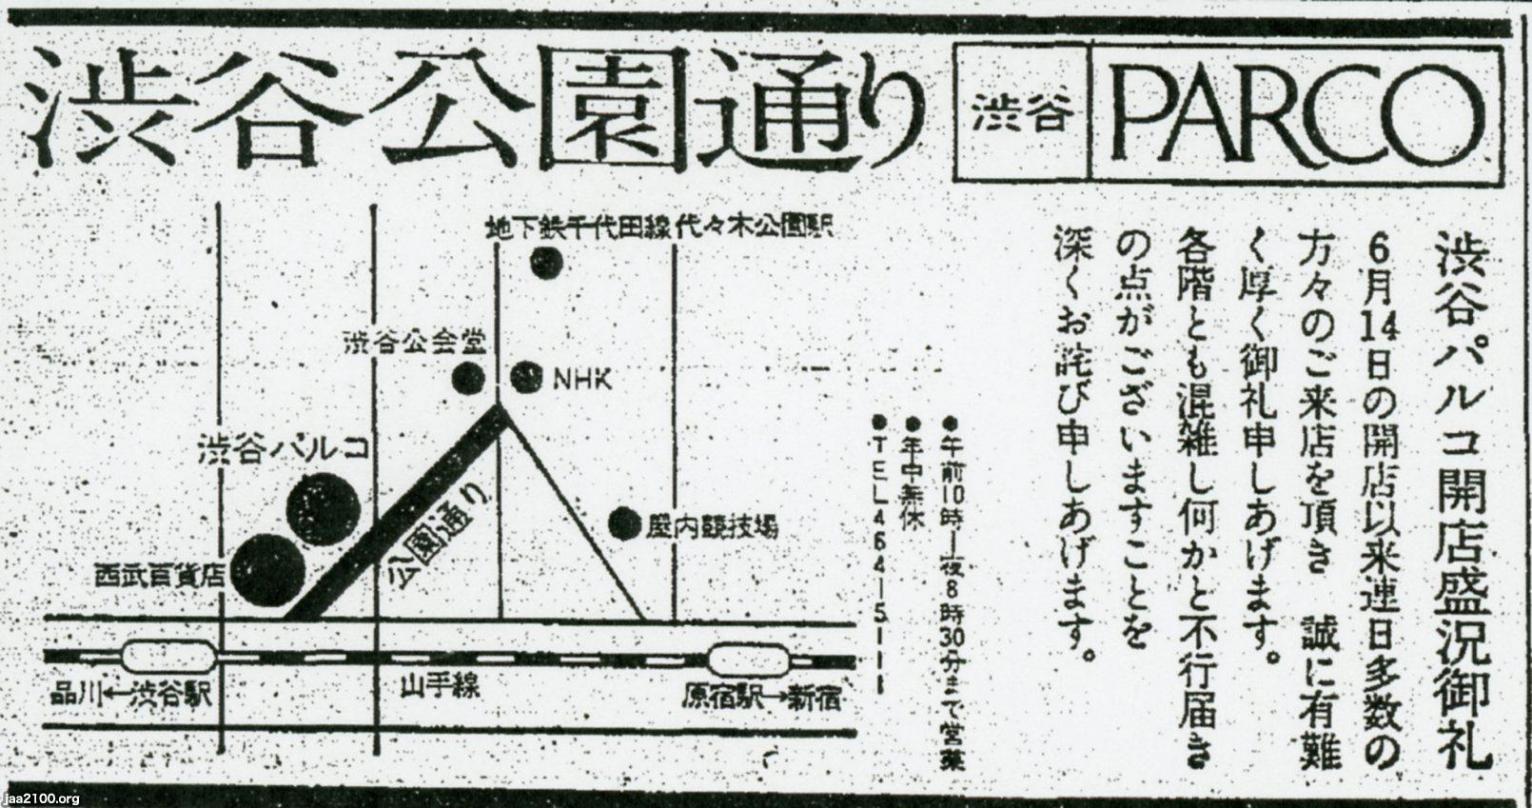 渋谷（昭和48年） 渋谷PARCOのオープン/「公園通り」命名 | ジャパンアーカイブズ - Japan Archives